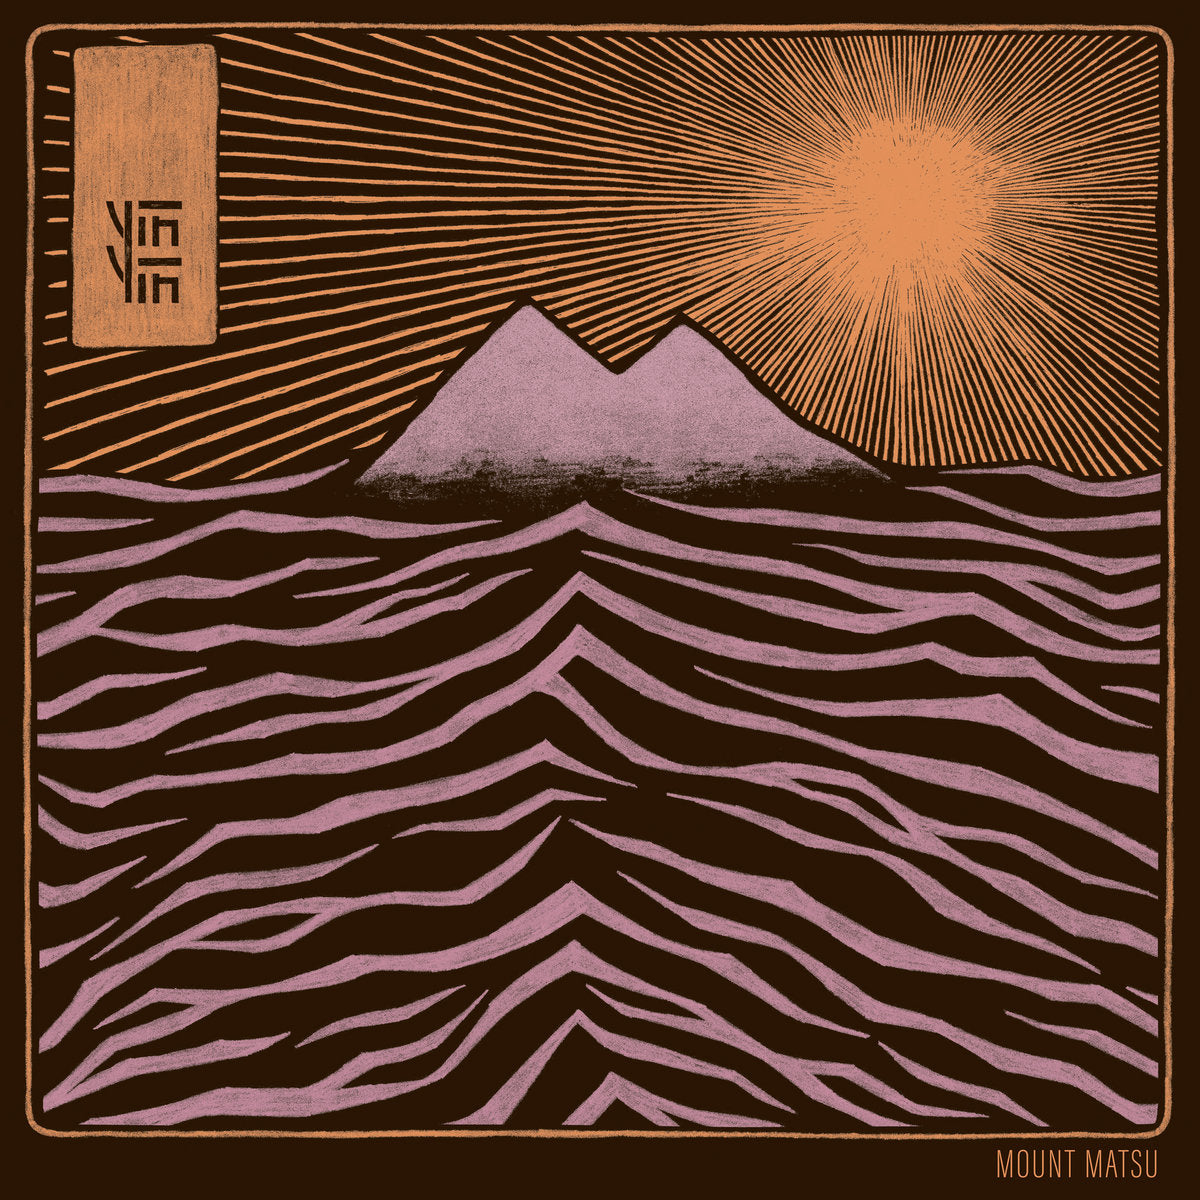 Mount Matsu (New LP)